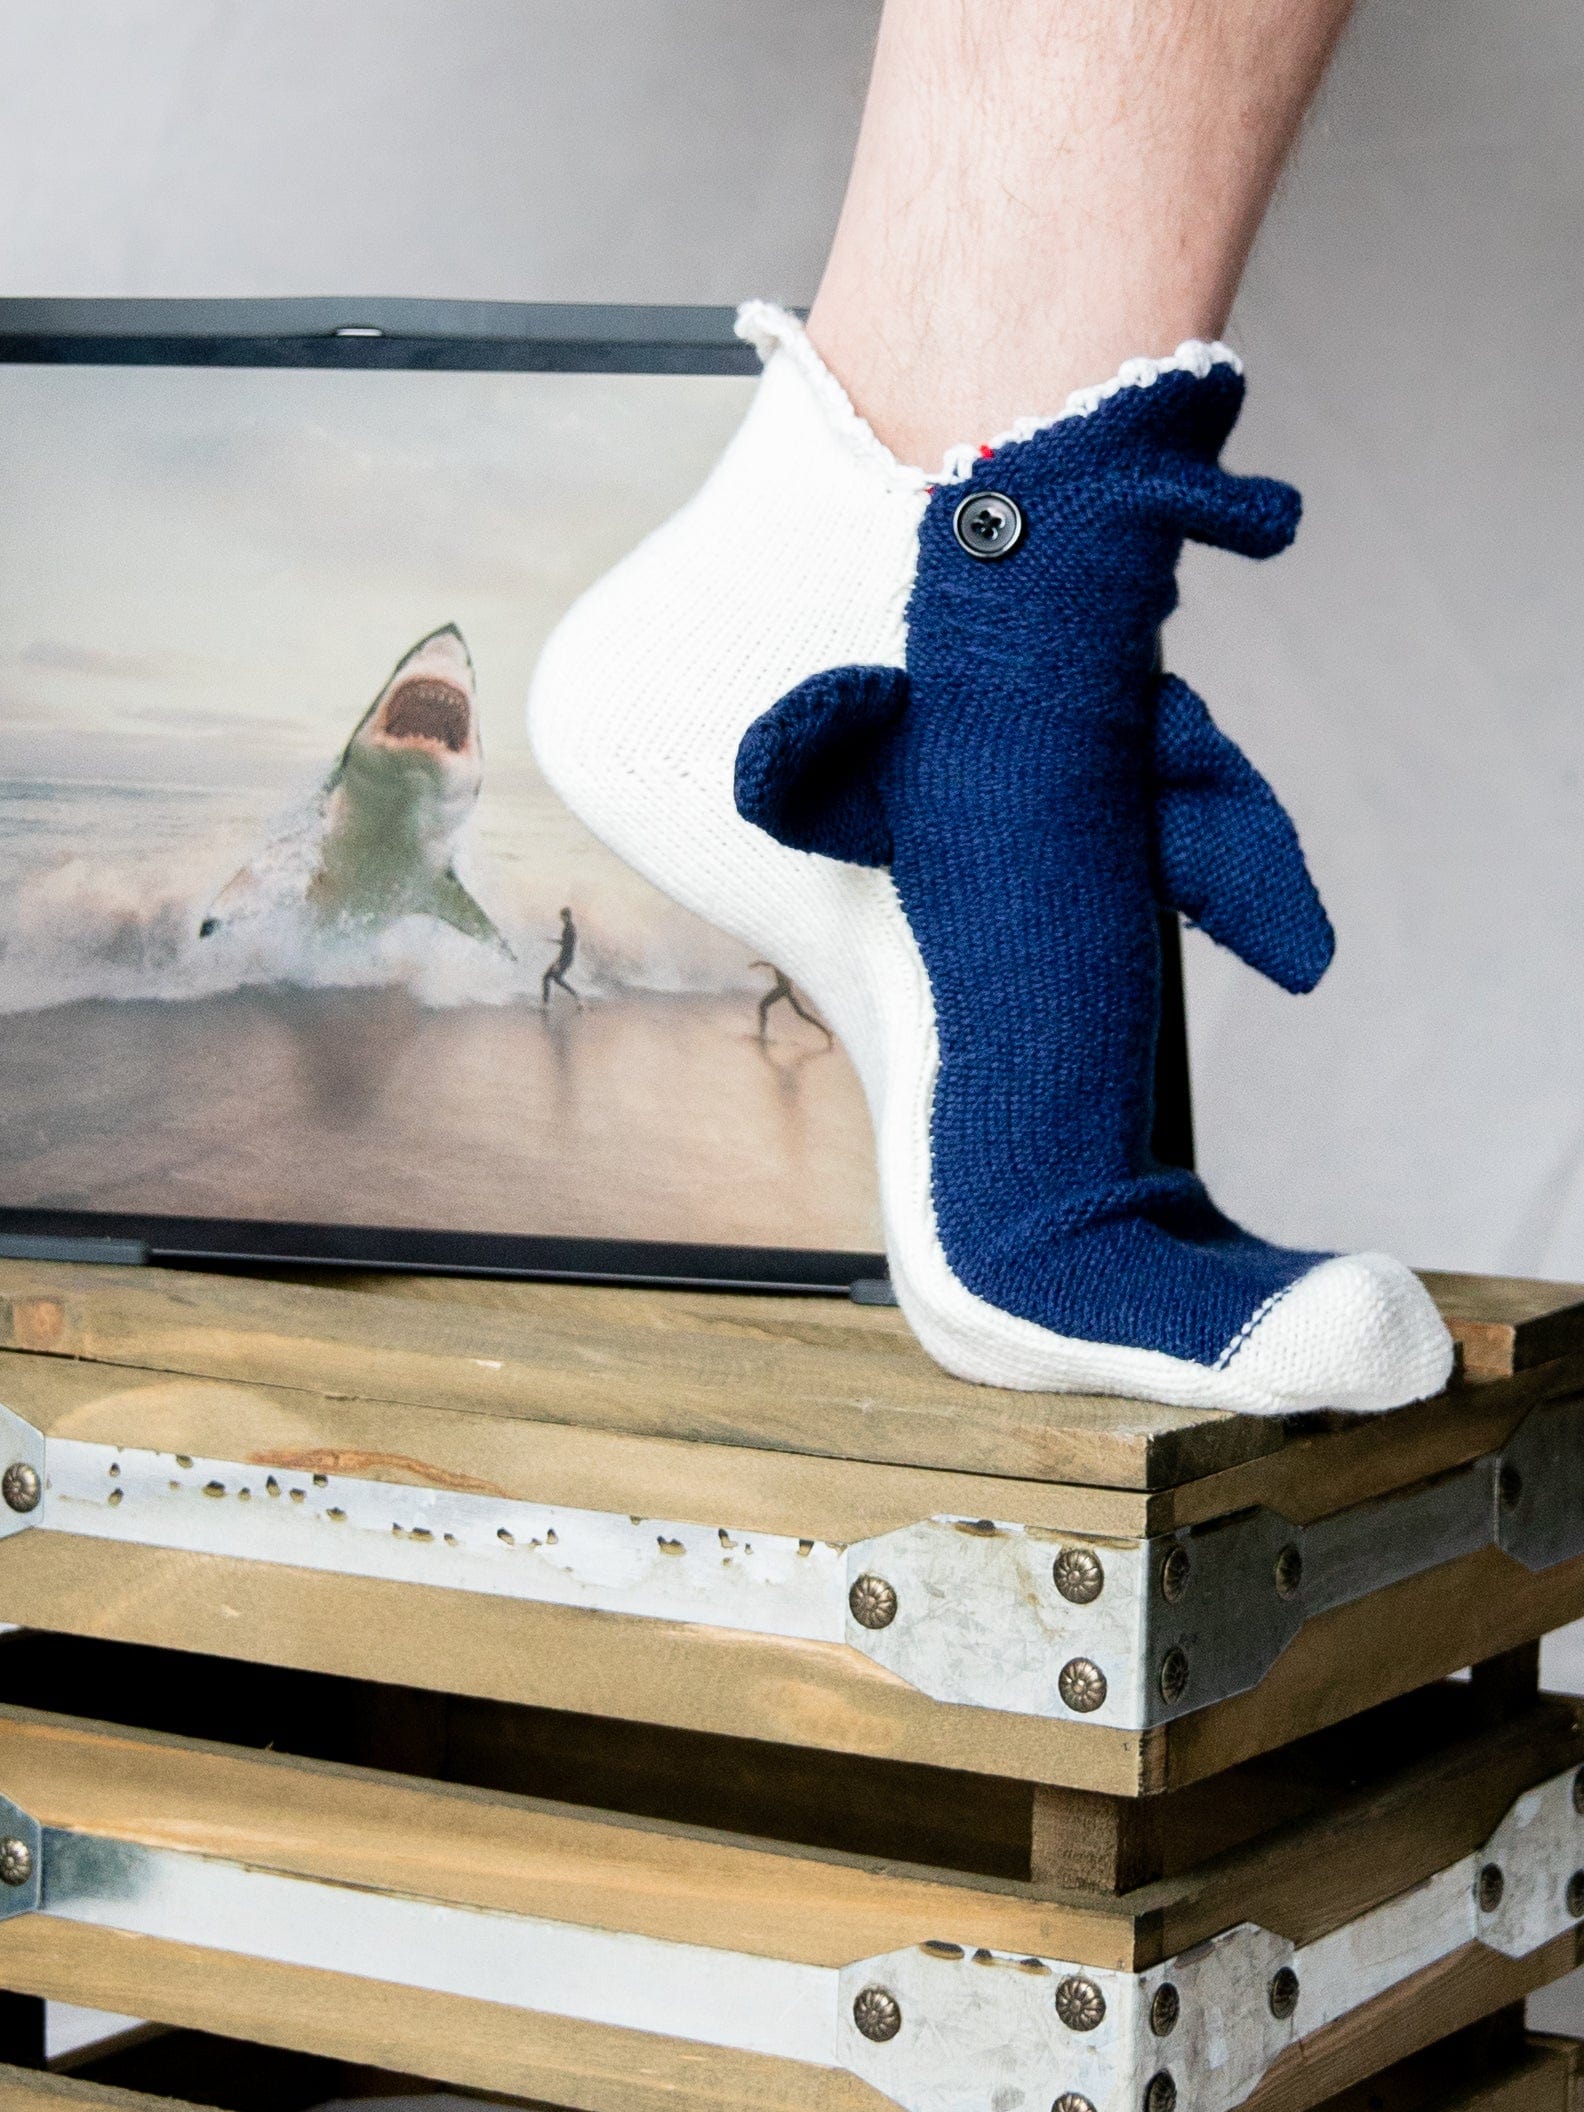 Great White Shark Socks